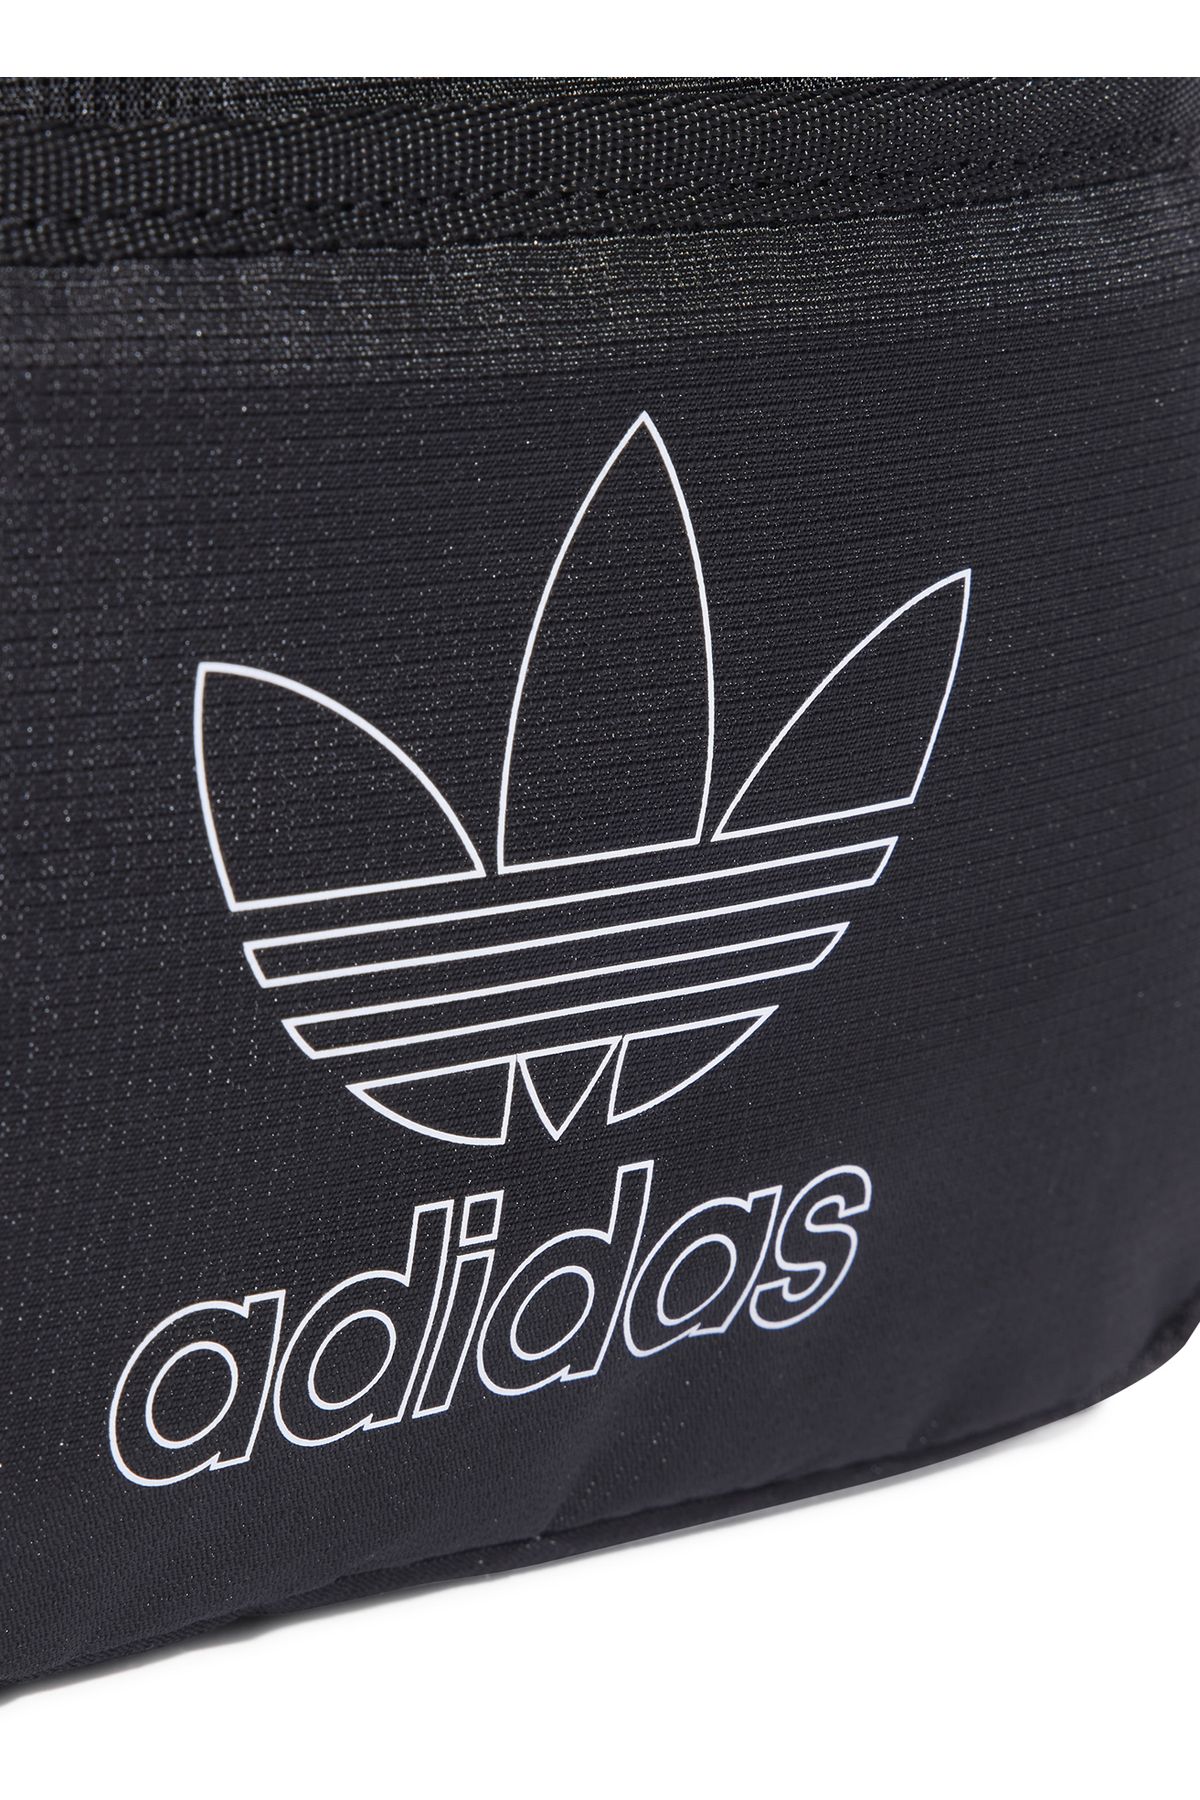 adidas کیسه کمر سیاه و سفید 9،5x32،75x15 سانتی متر IS4585 کوچک